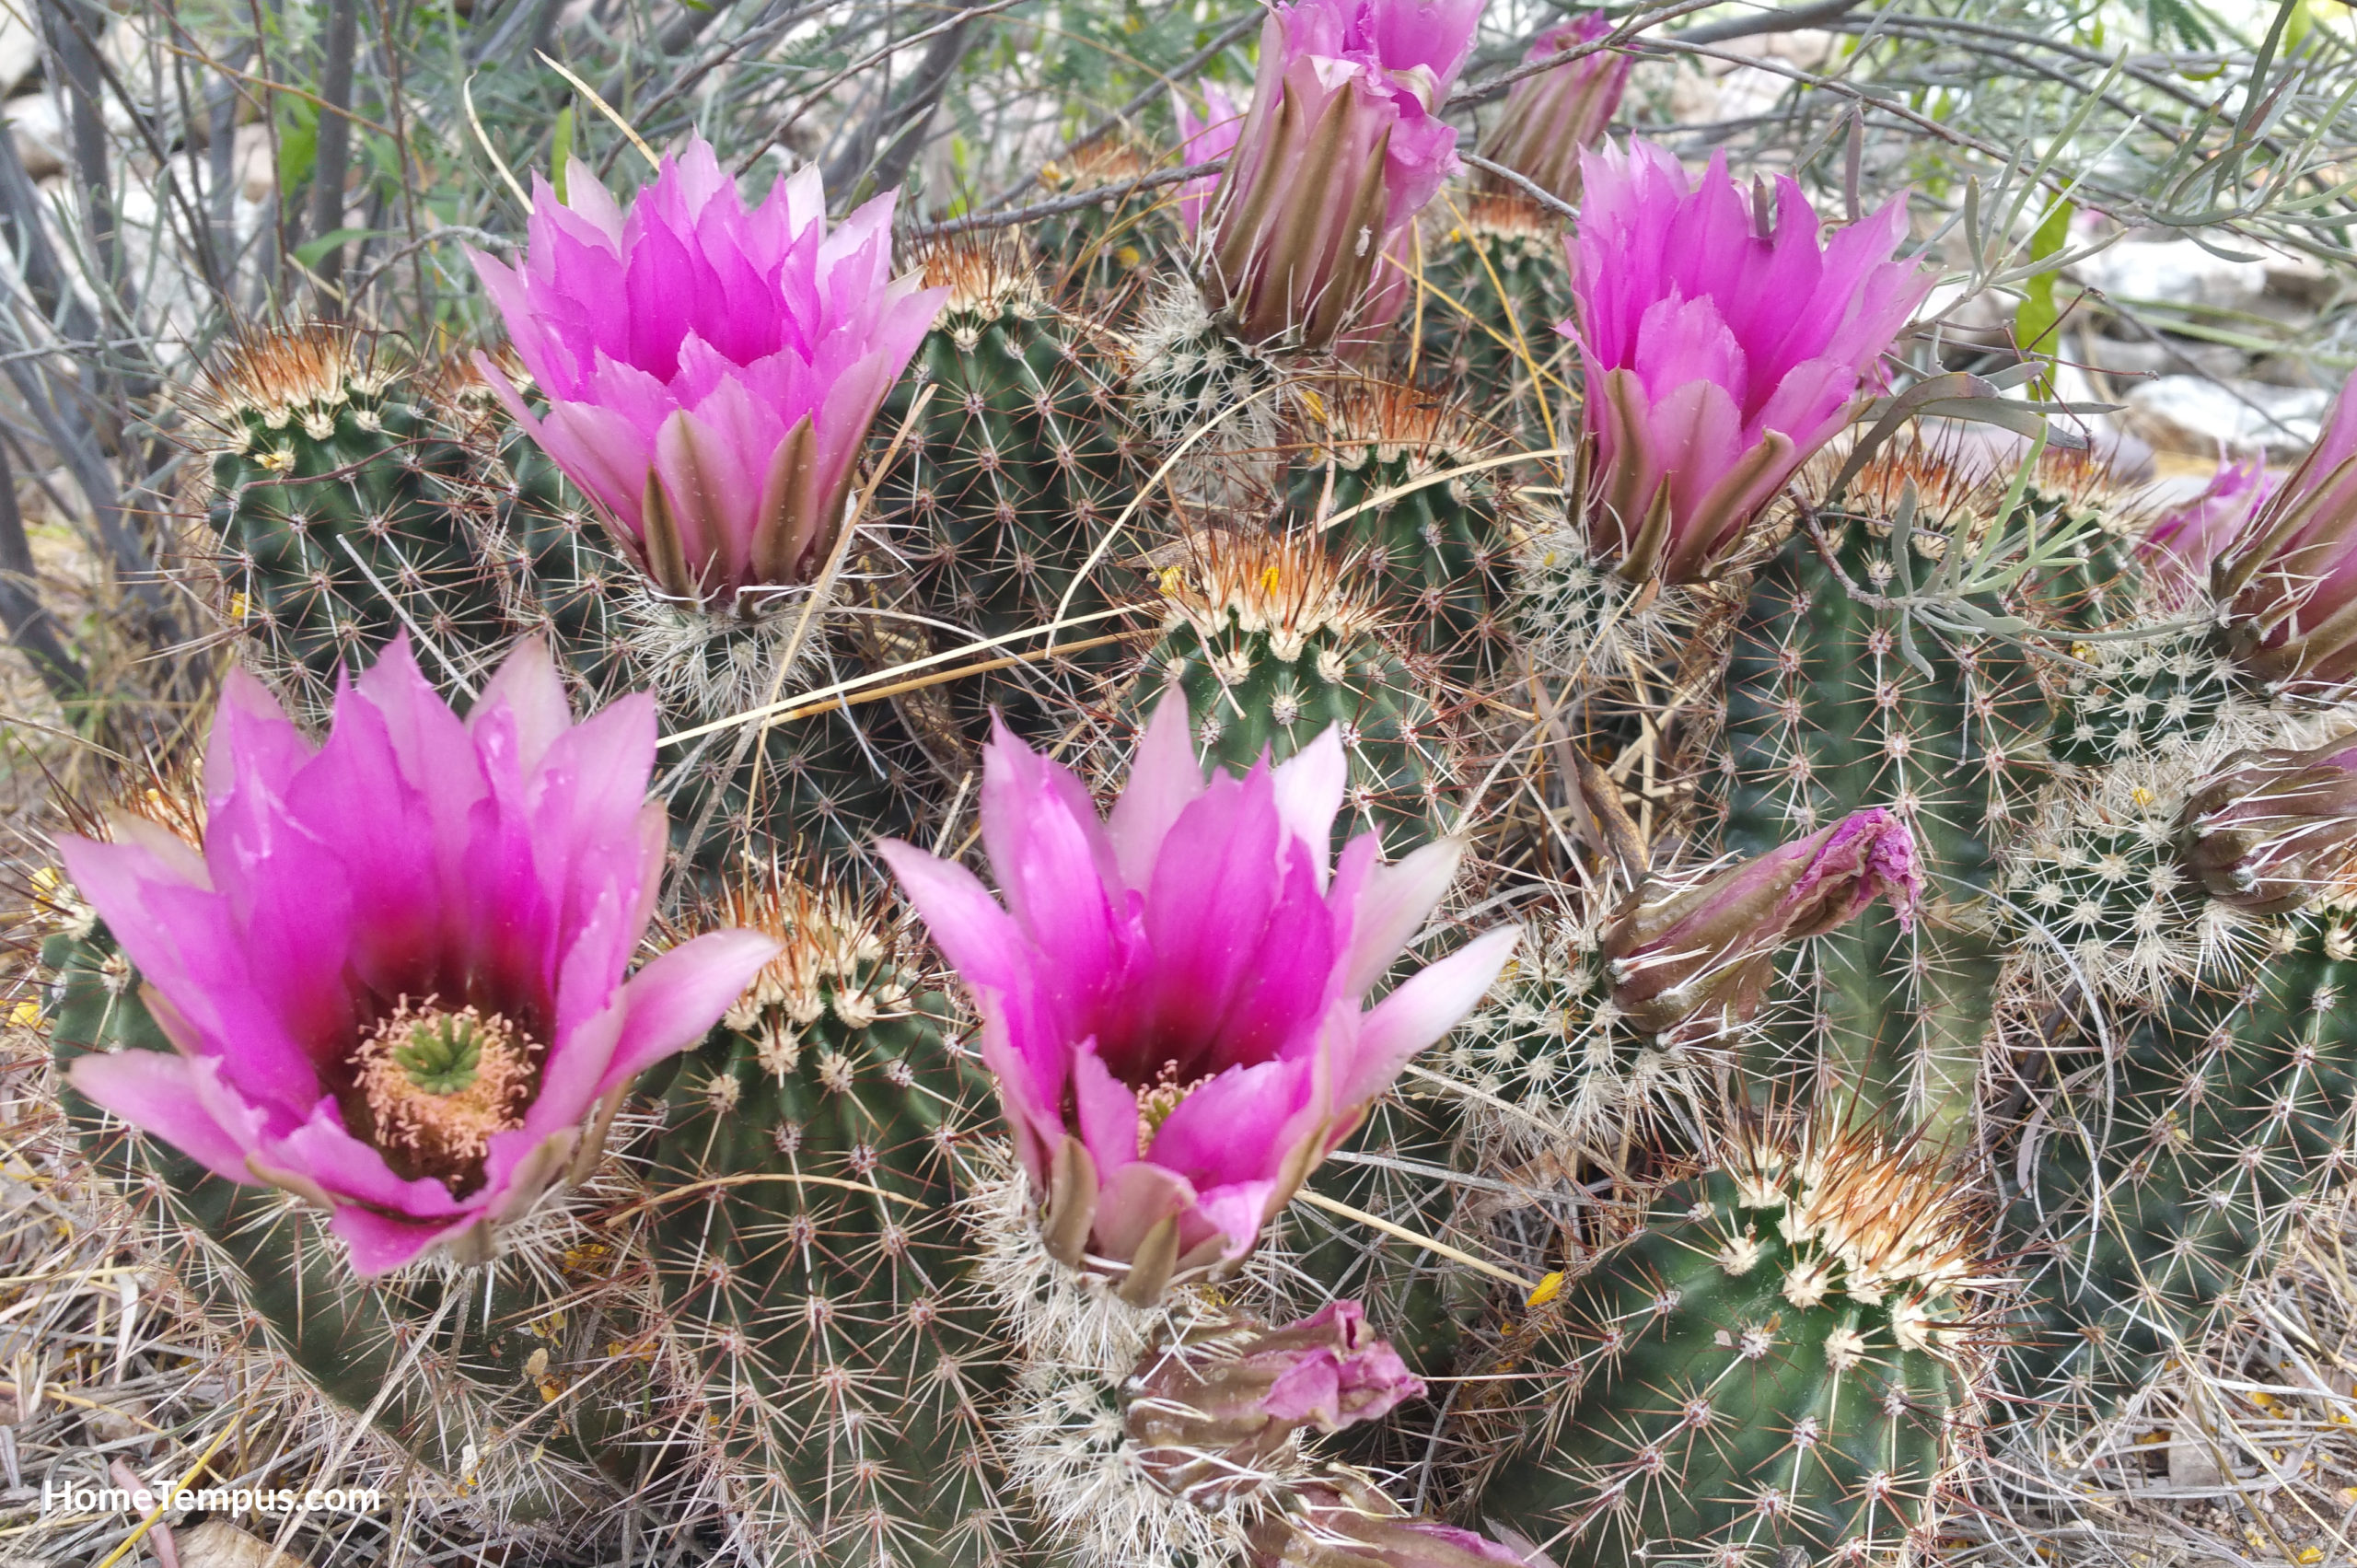 Calico Cactus flower(Echinocereus engelmannii)